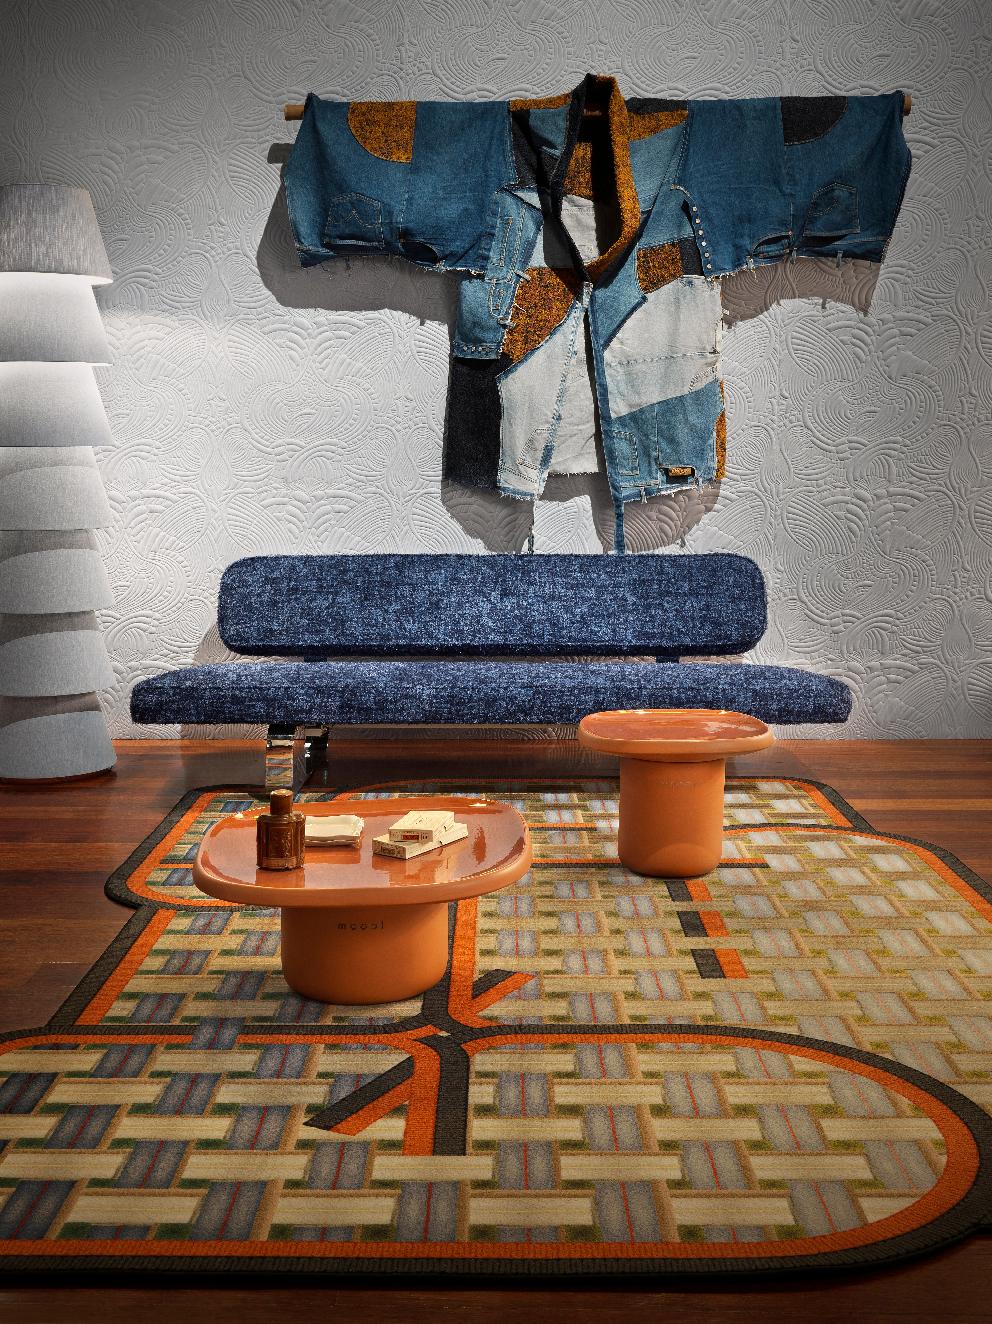 Tapis de Menjangan Tangle de la collection Small Yarn Box de Moooi en laine par Claire Vos

Claire Vos a commencé ses études de design industriel à la 